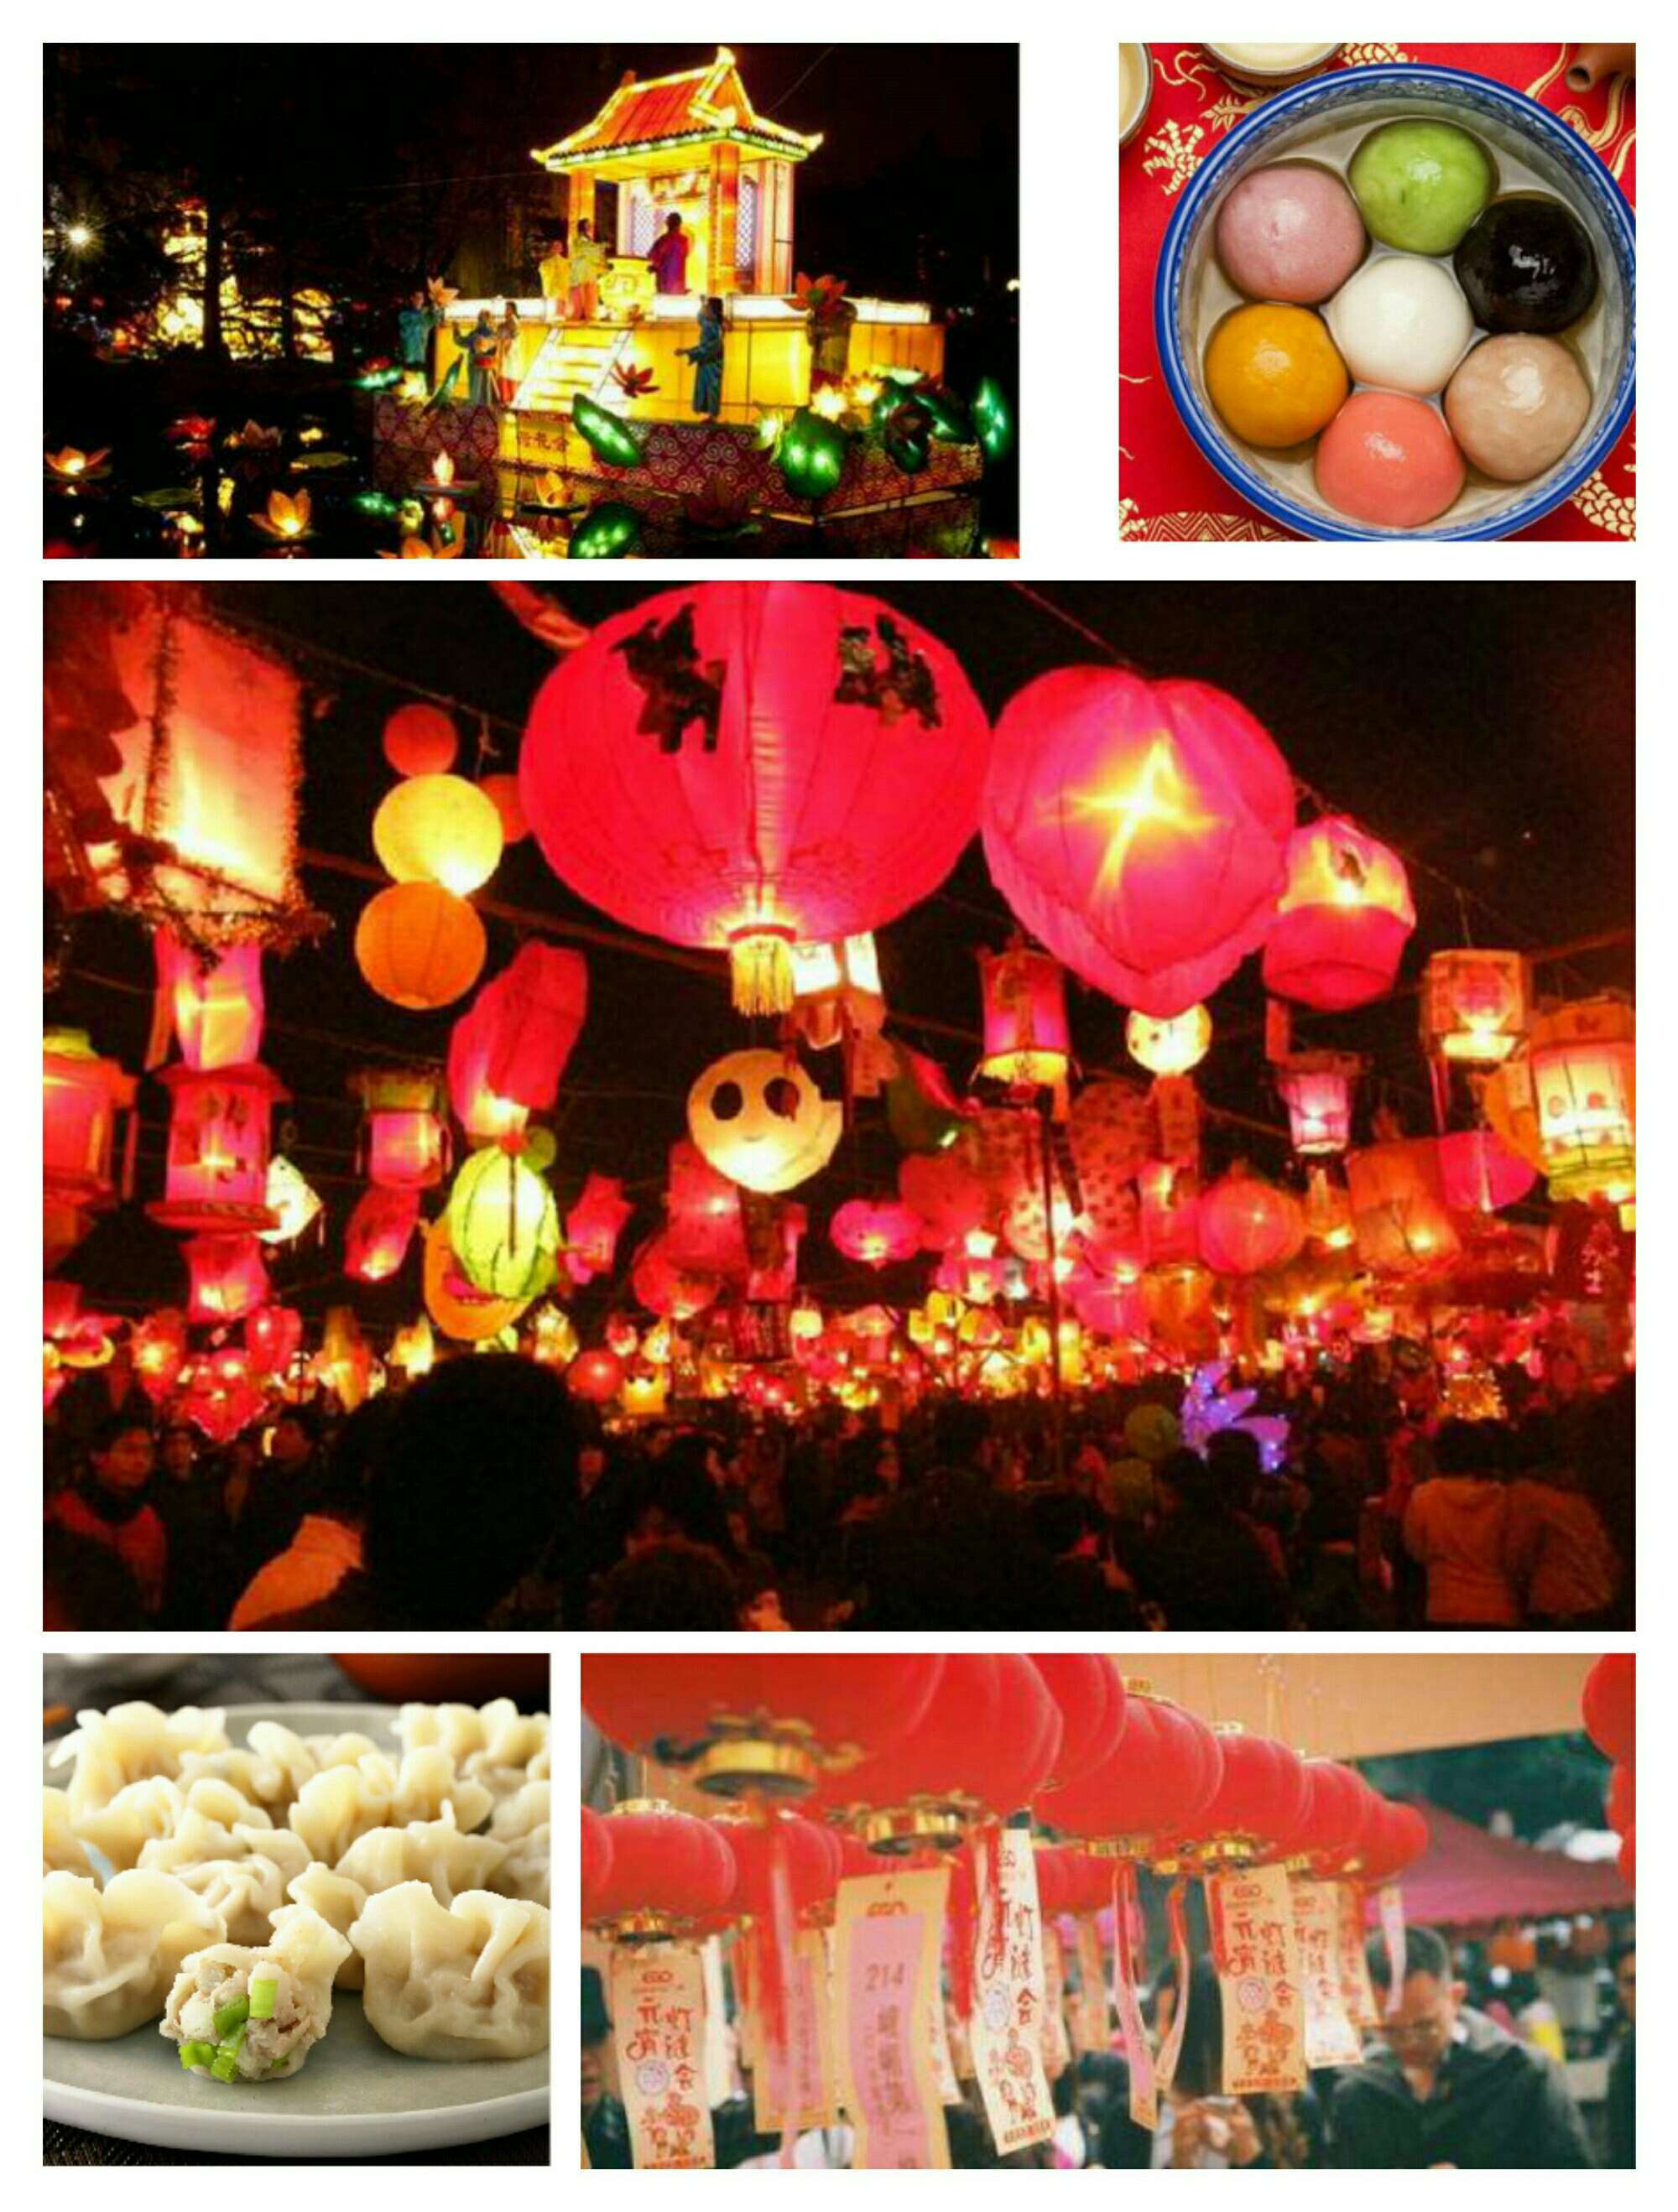 上元节是什么节日由来和传说 上元节是什么节日